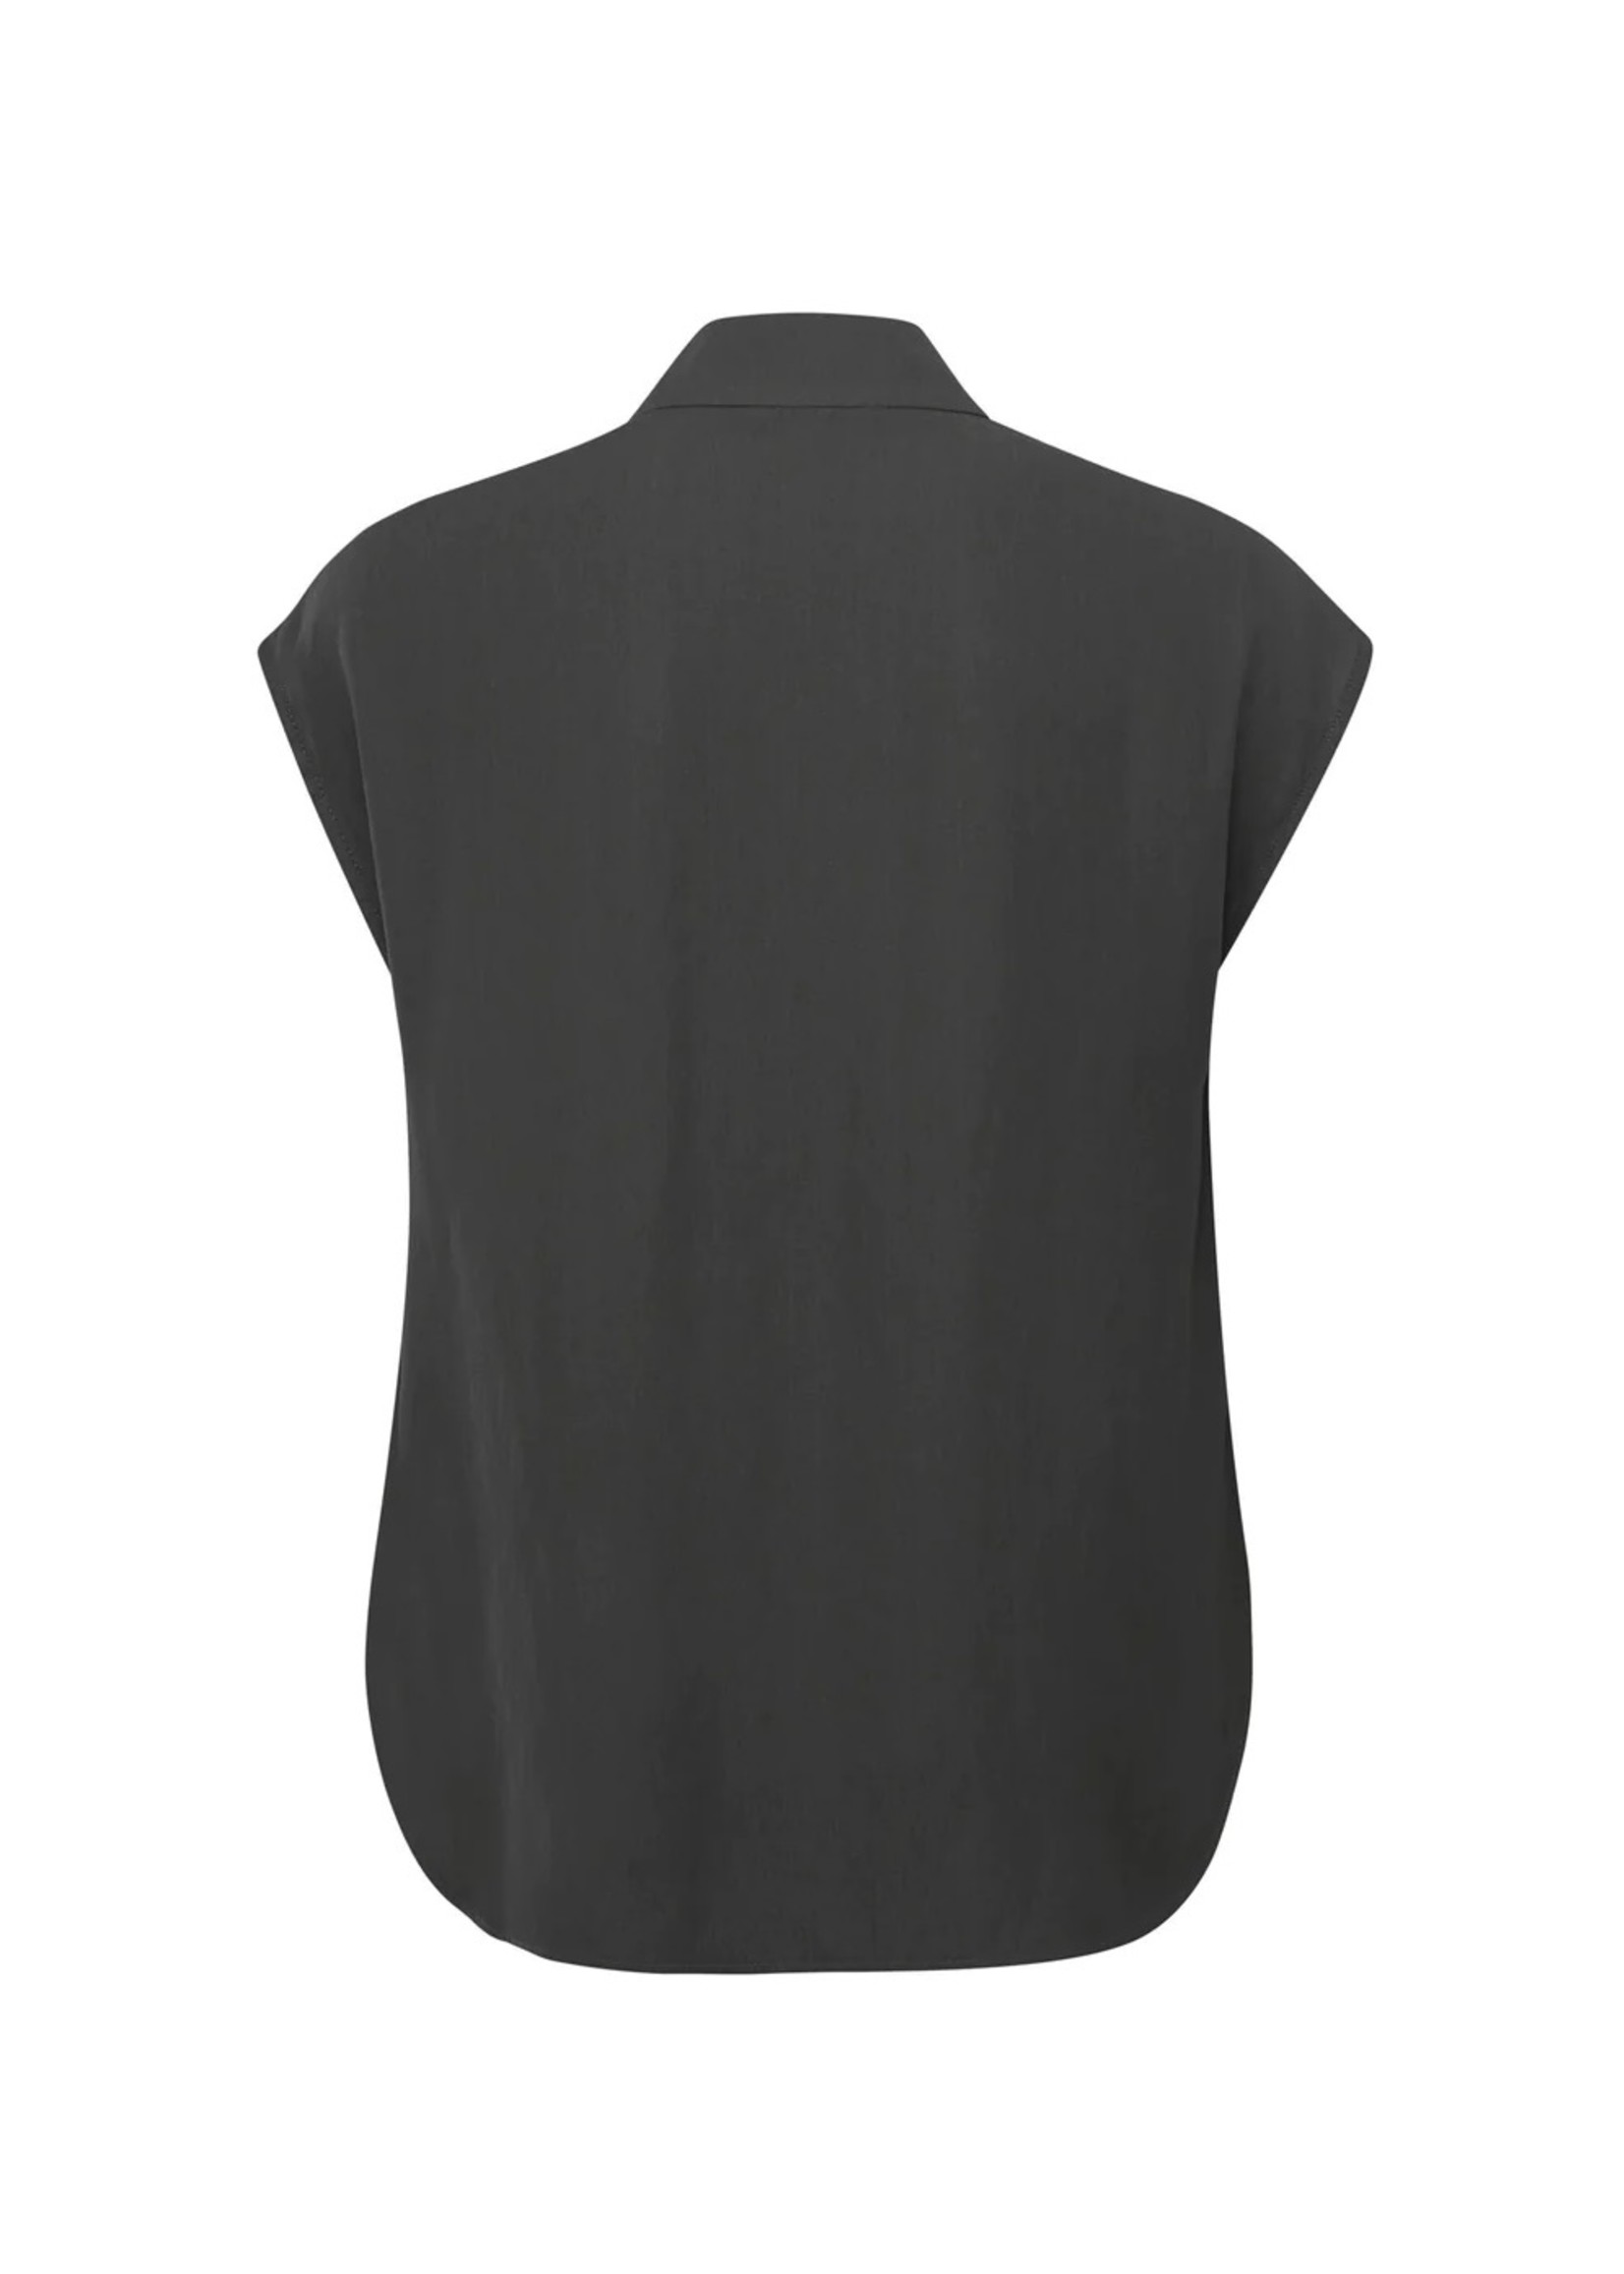 YAYA Yaya - Woven Sleeveless blouse with buttons and front and back yoke